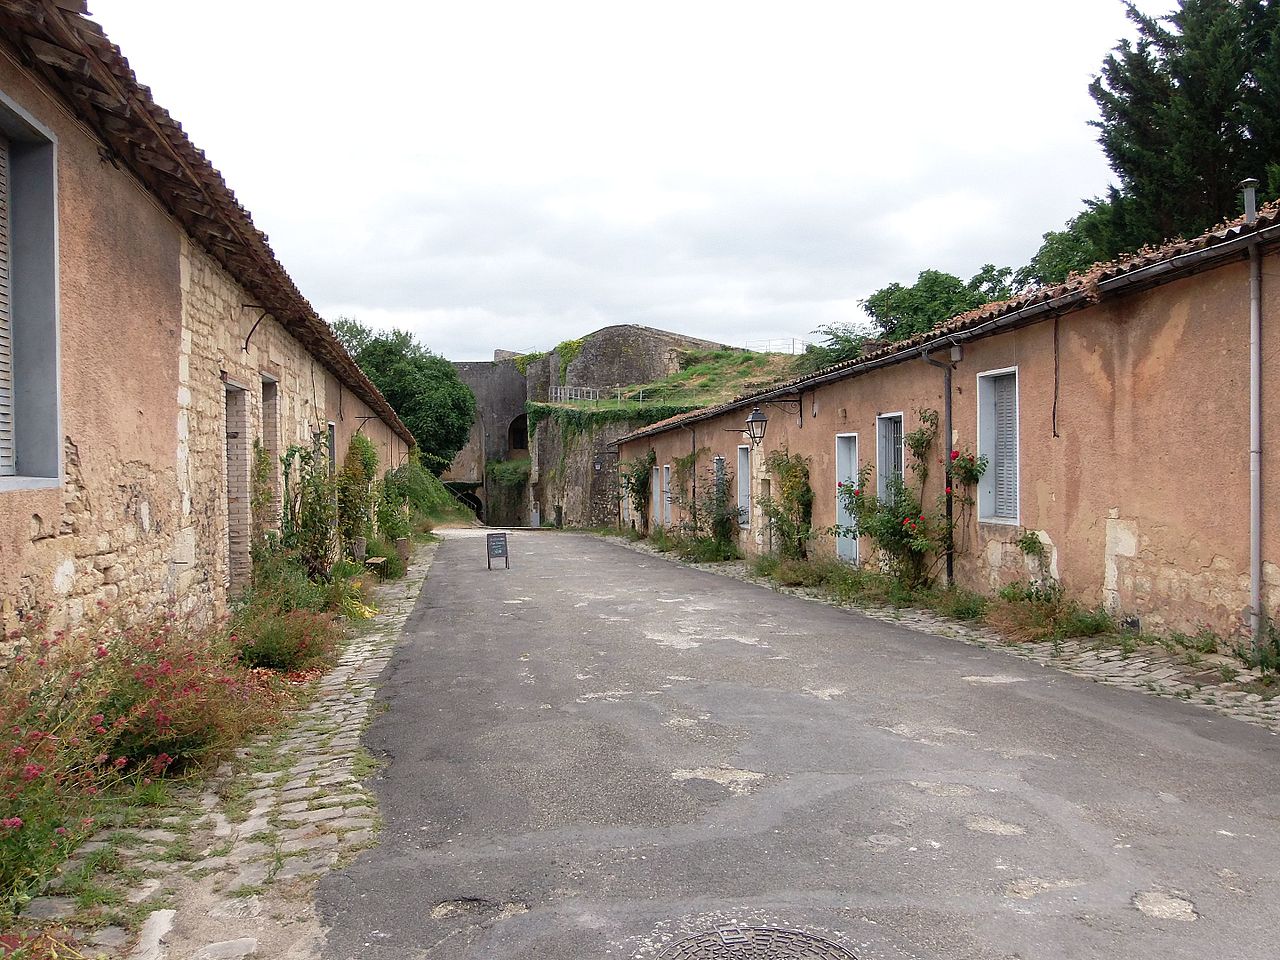 Sur cette image on peut voir la rue du Bastion Saint Romain qui permet l'accès à la citadelle de Blaye